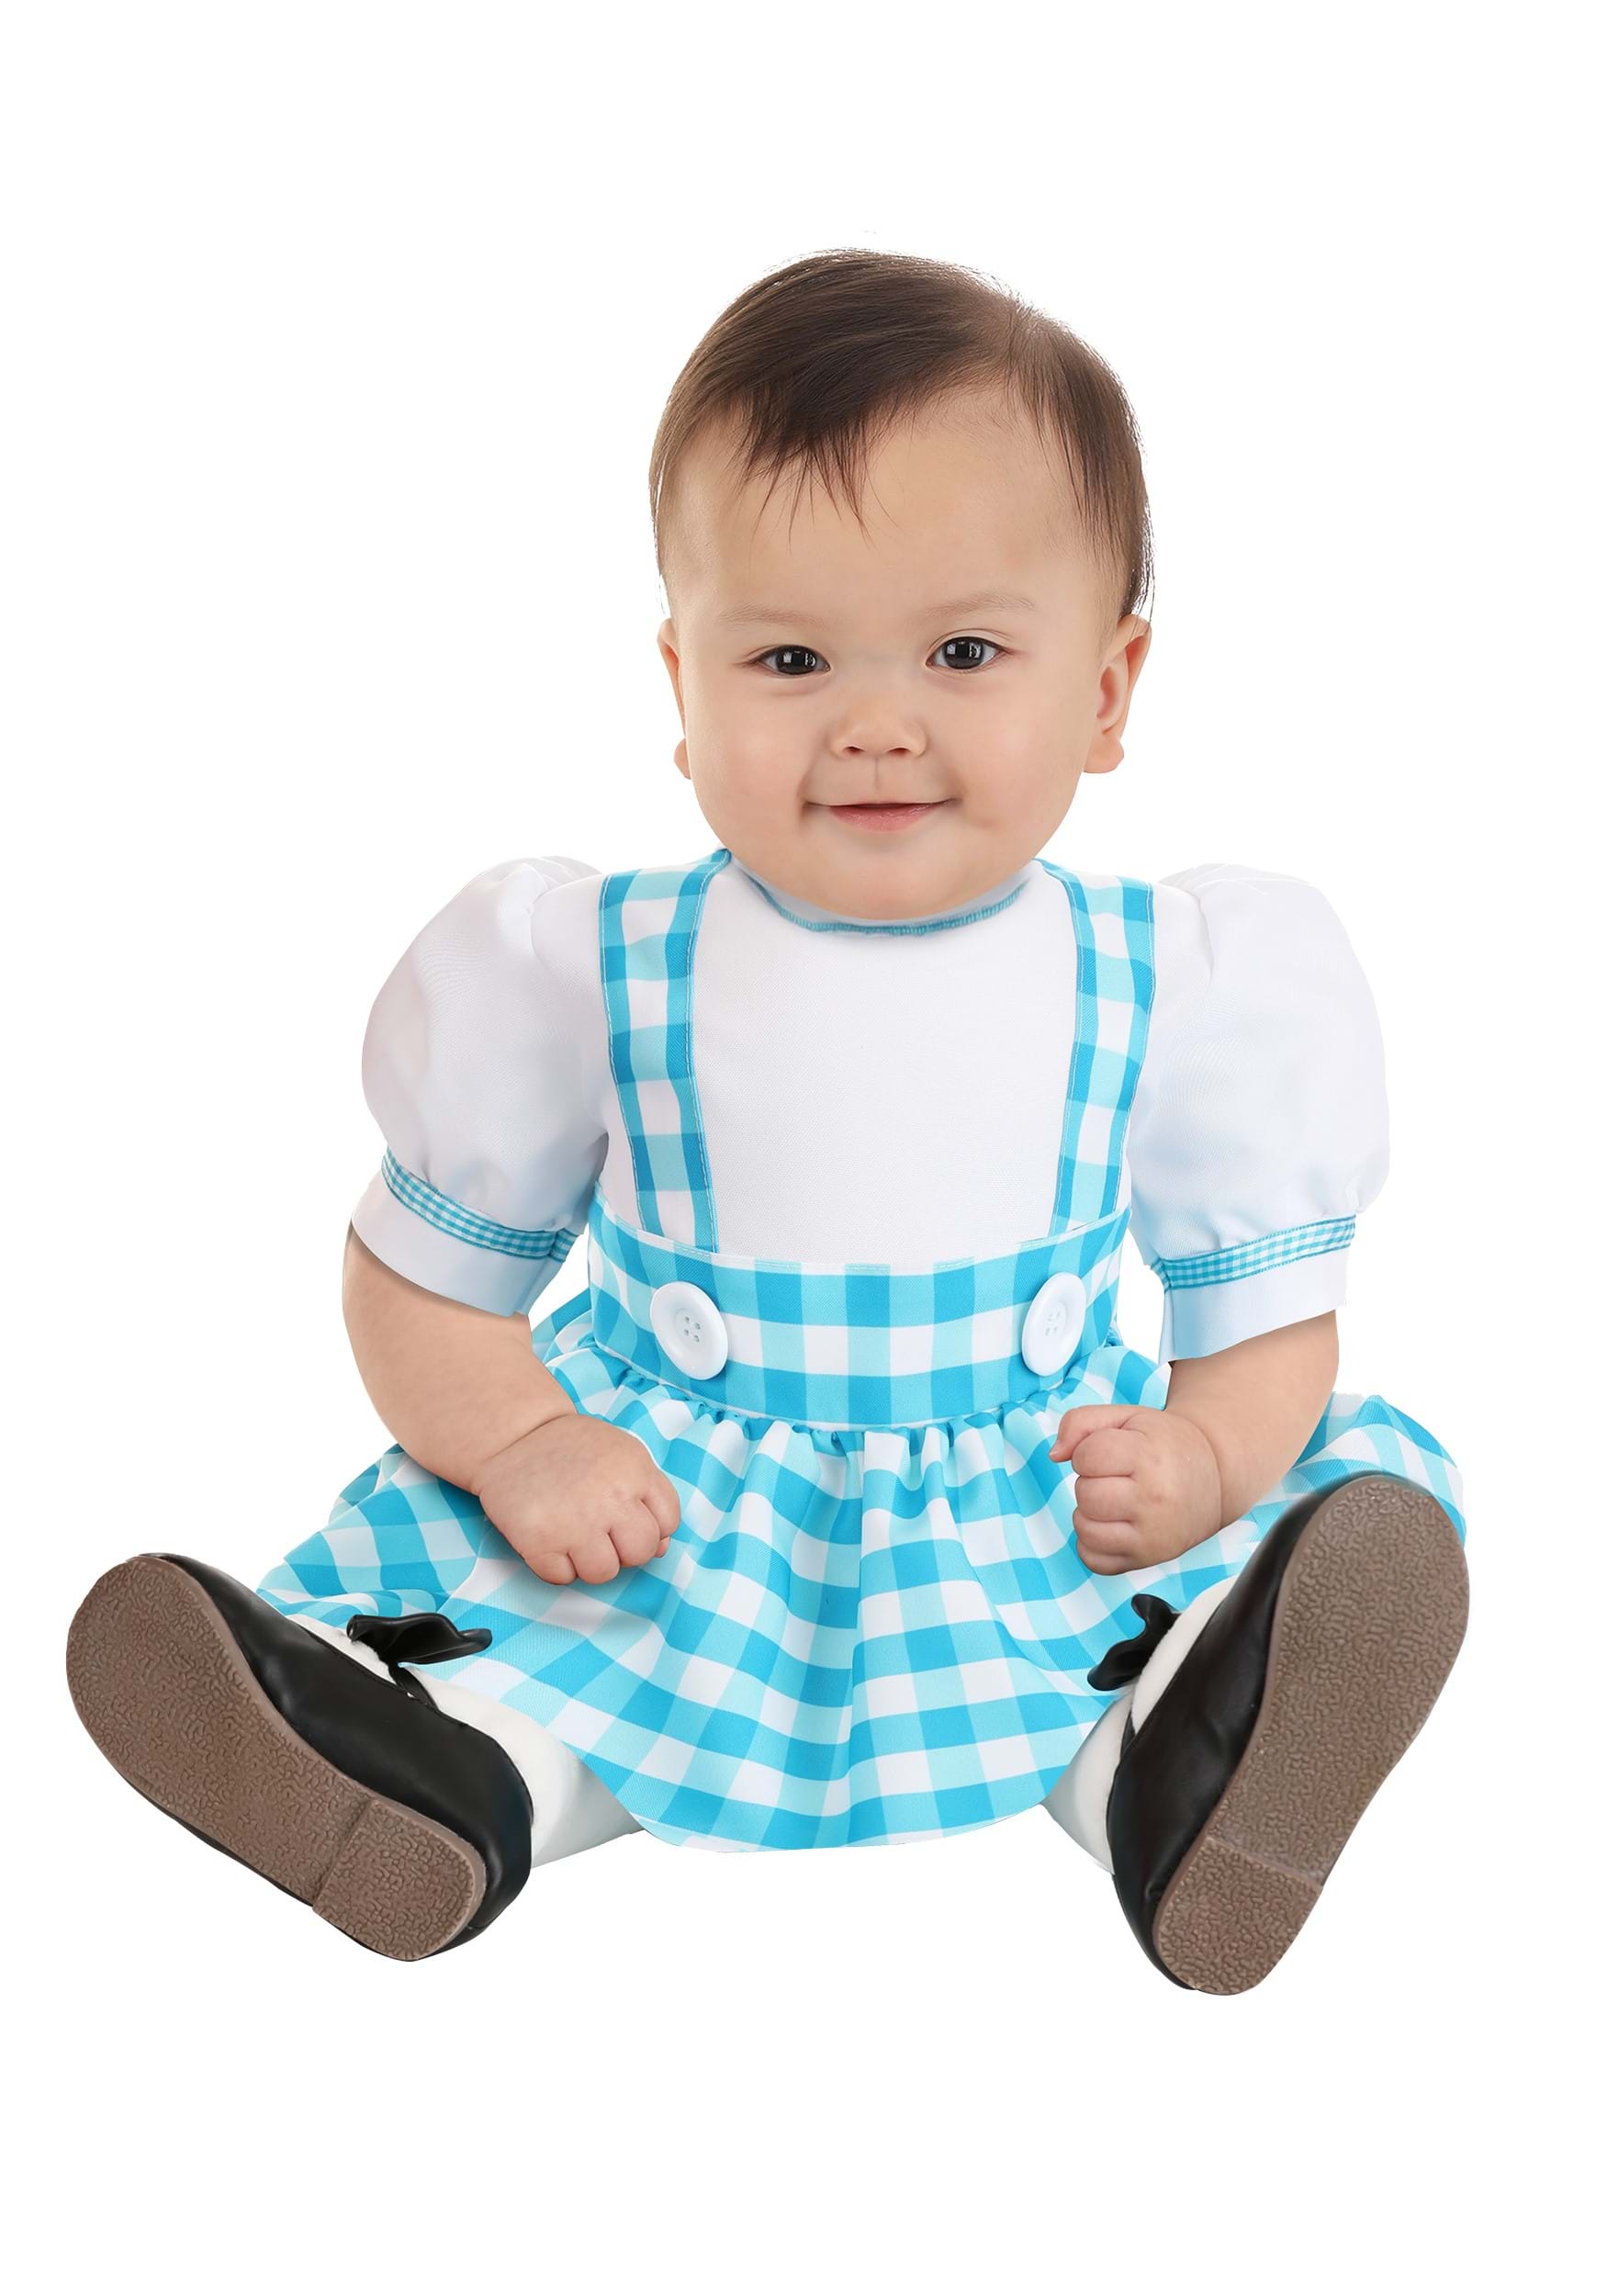 Gingham Kansas Girl Costume for Infants